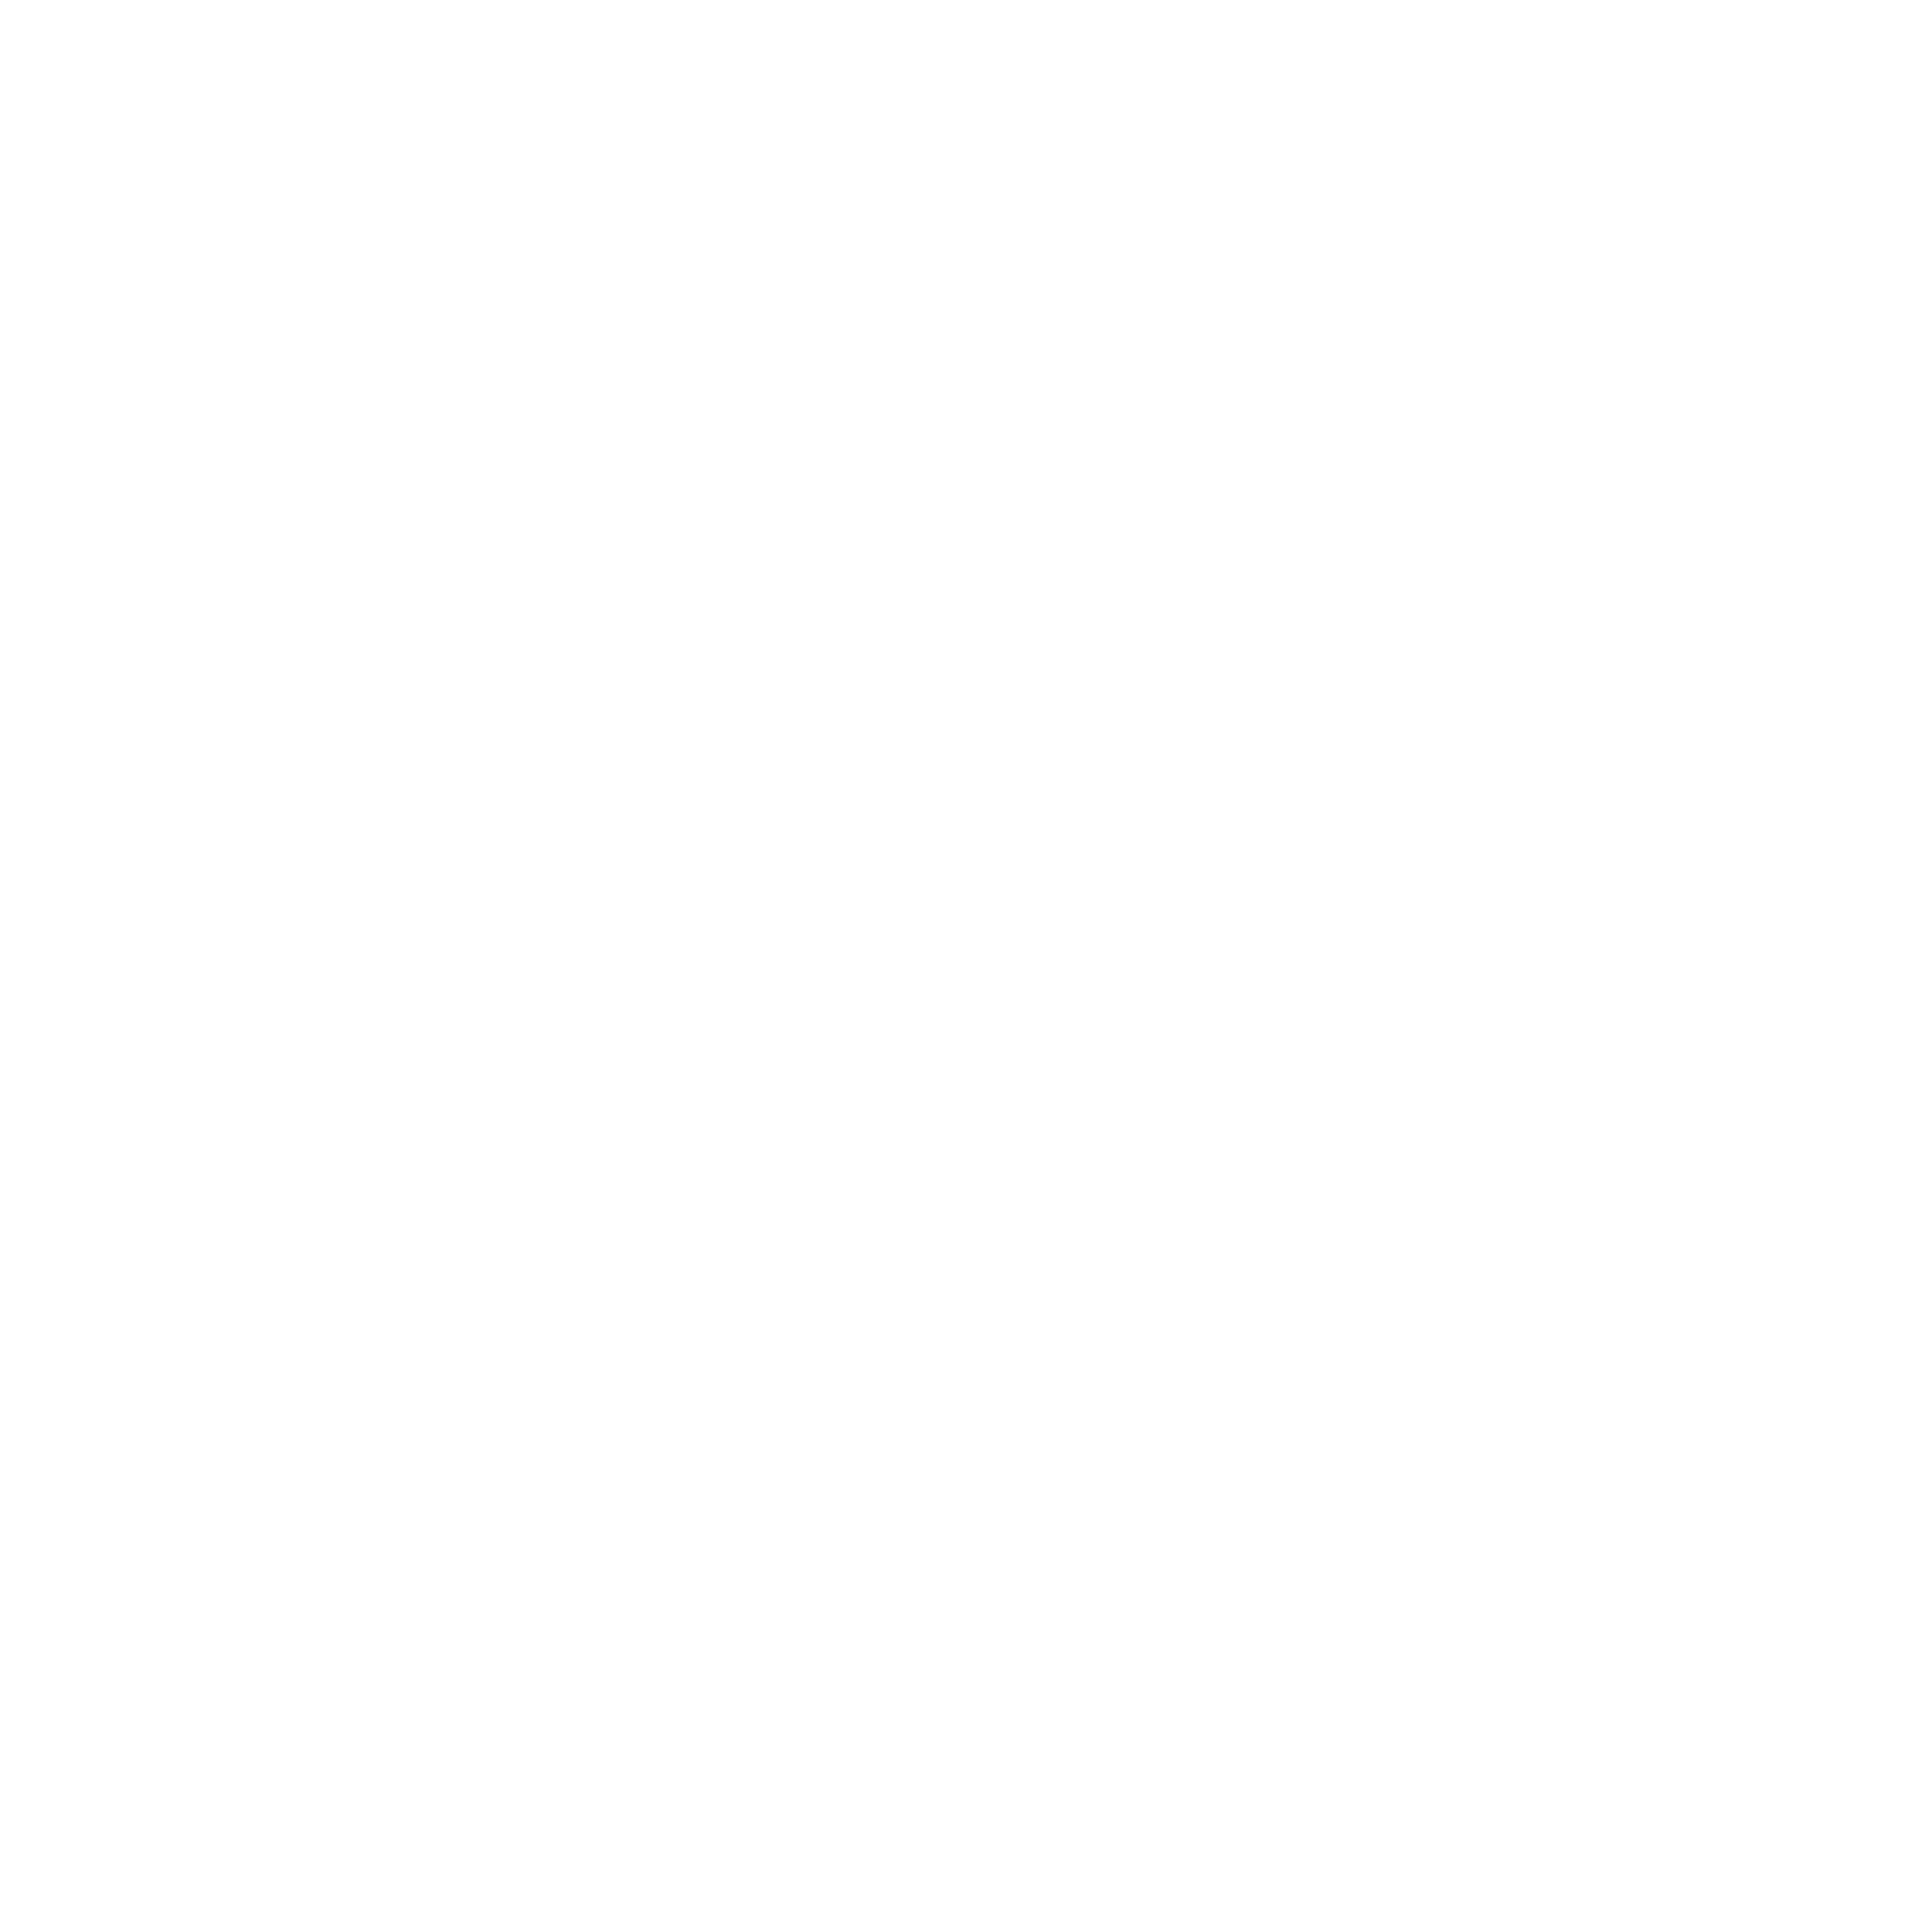 Fabrizio Cozzolino Osteopata 